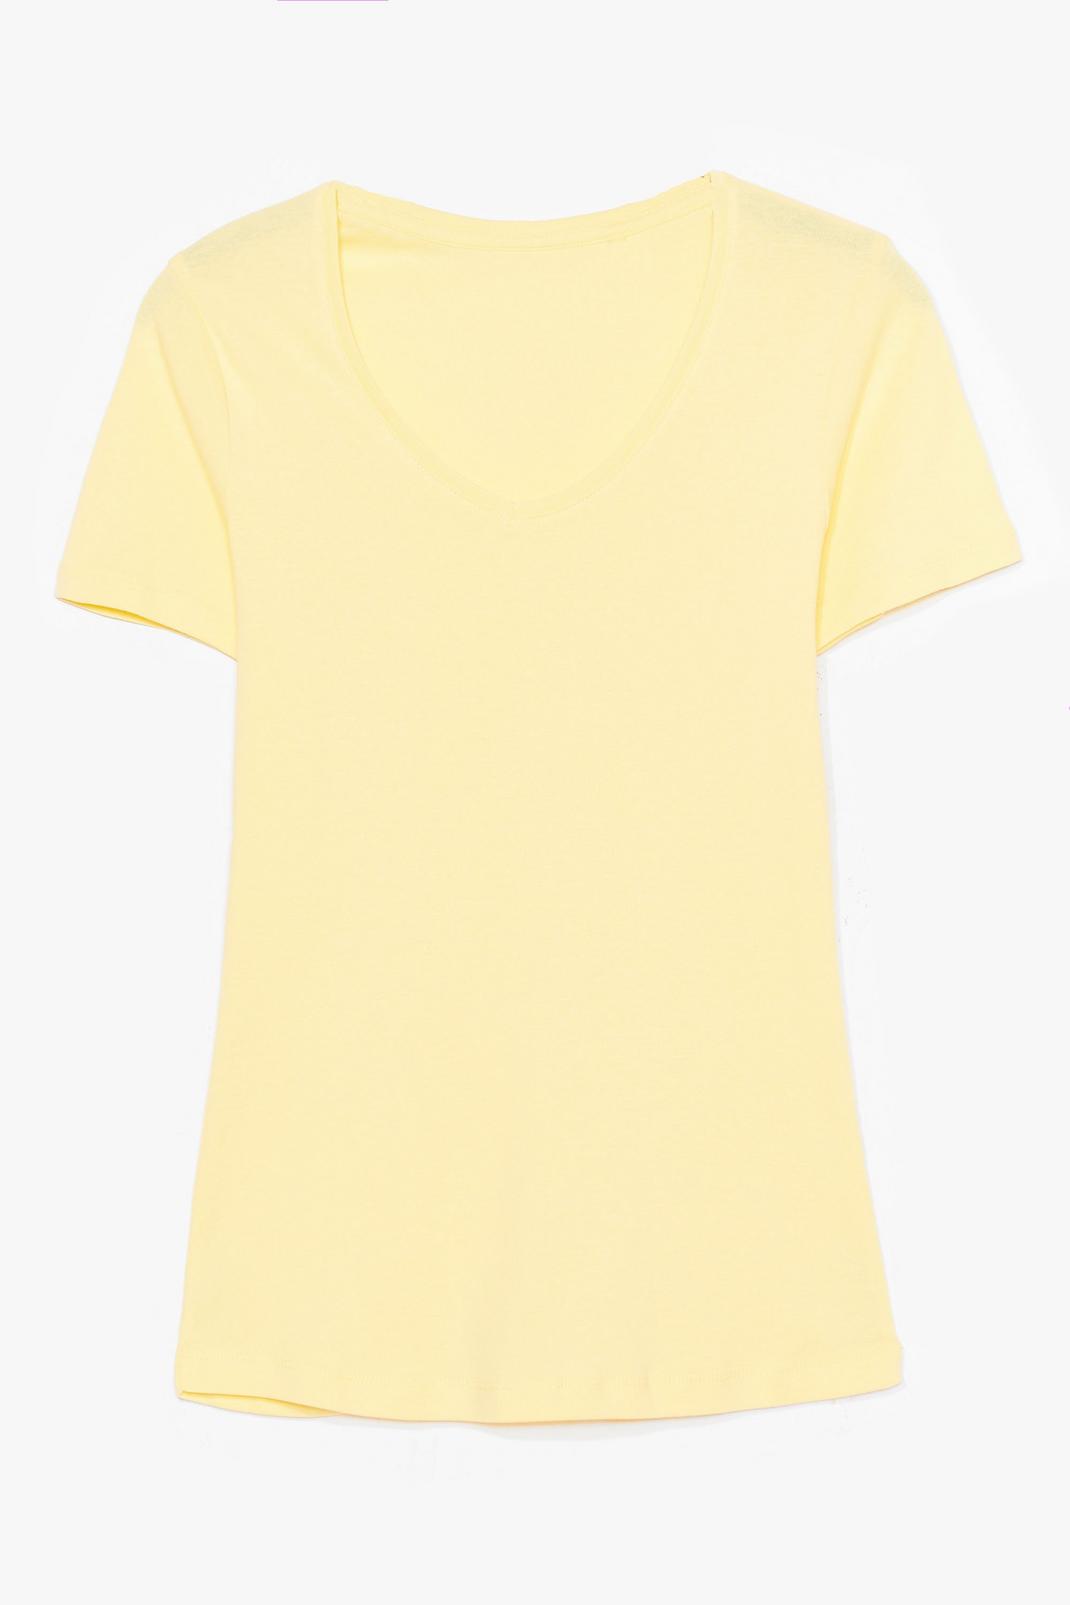 Lemon V Neck Short Sleeve T-Shirt image number 1